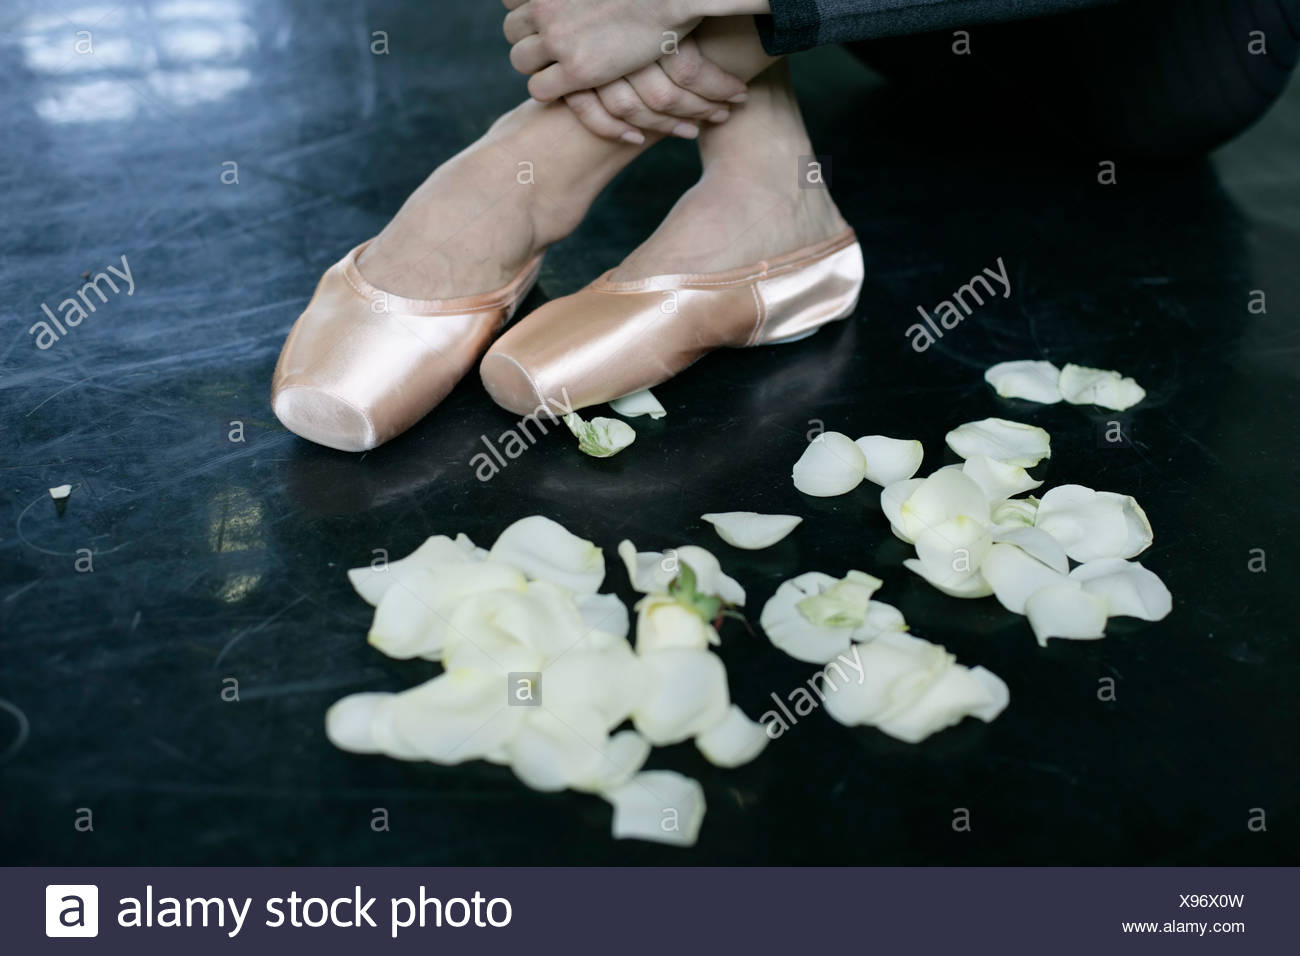 ballet shoes next